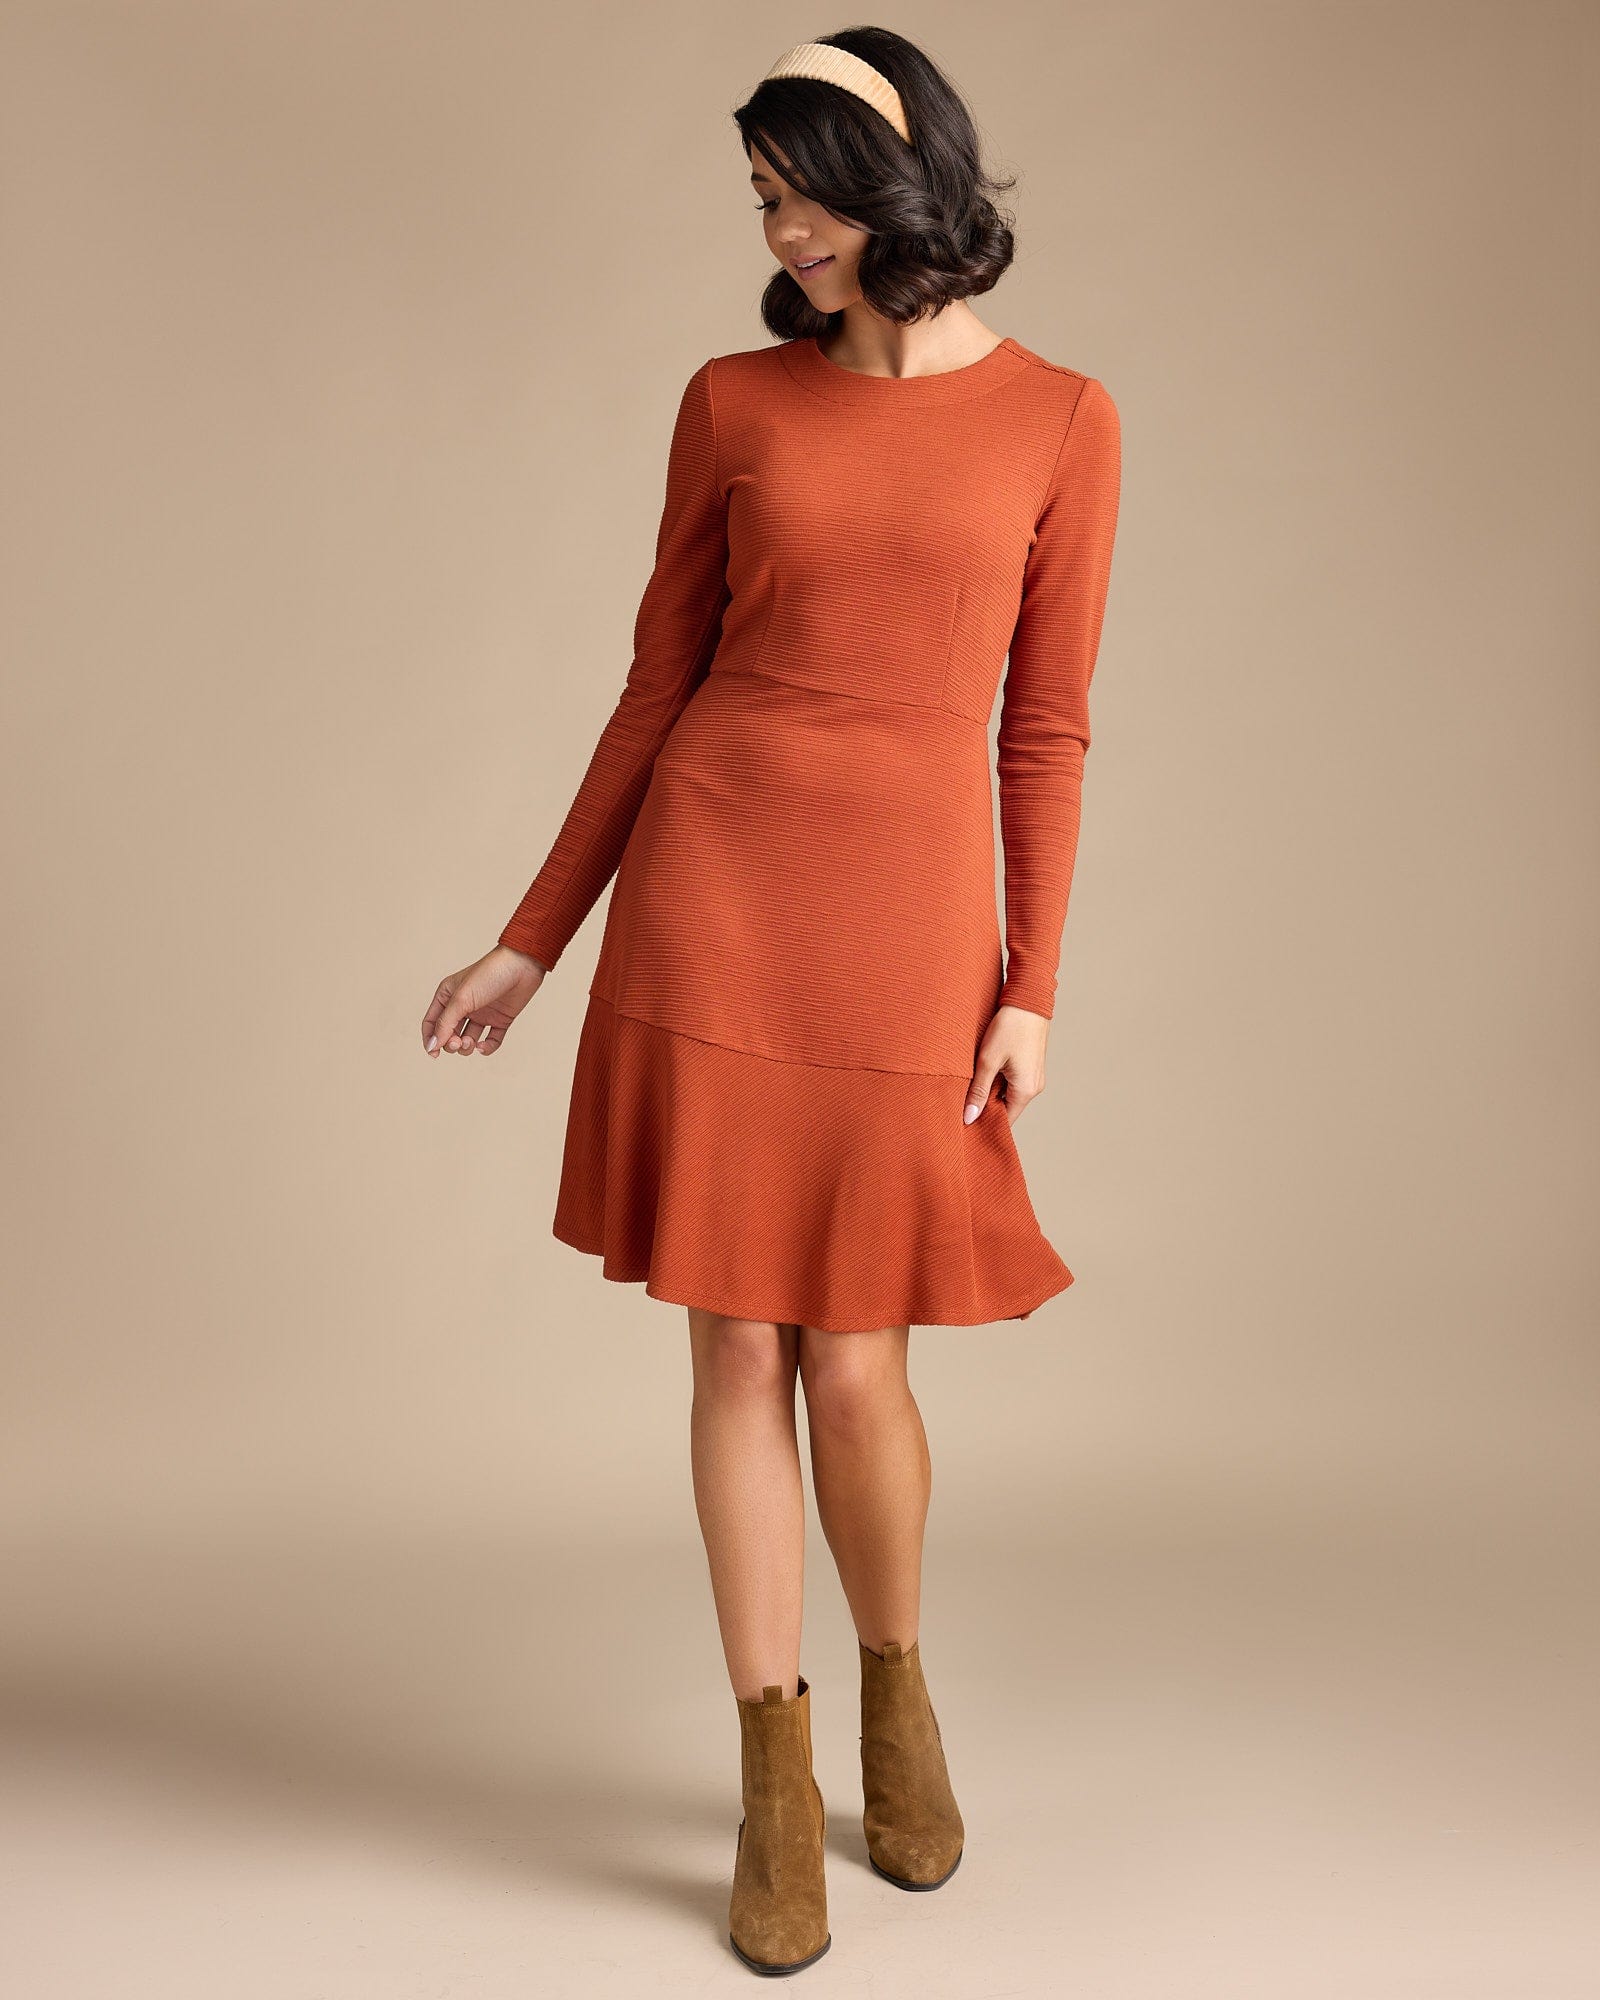 Woman in a long sleeve, knee-length, orange dress